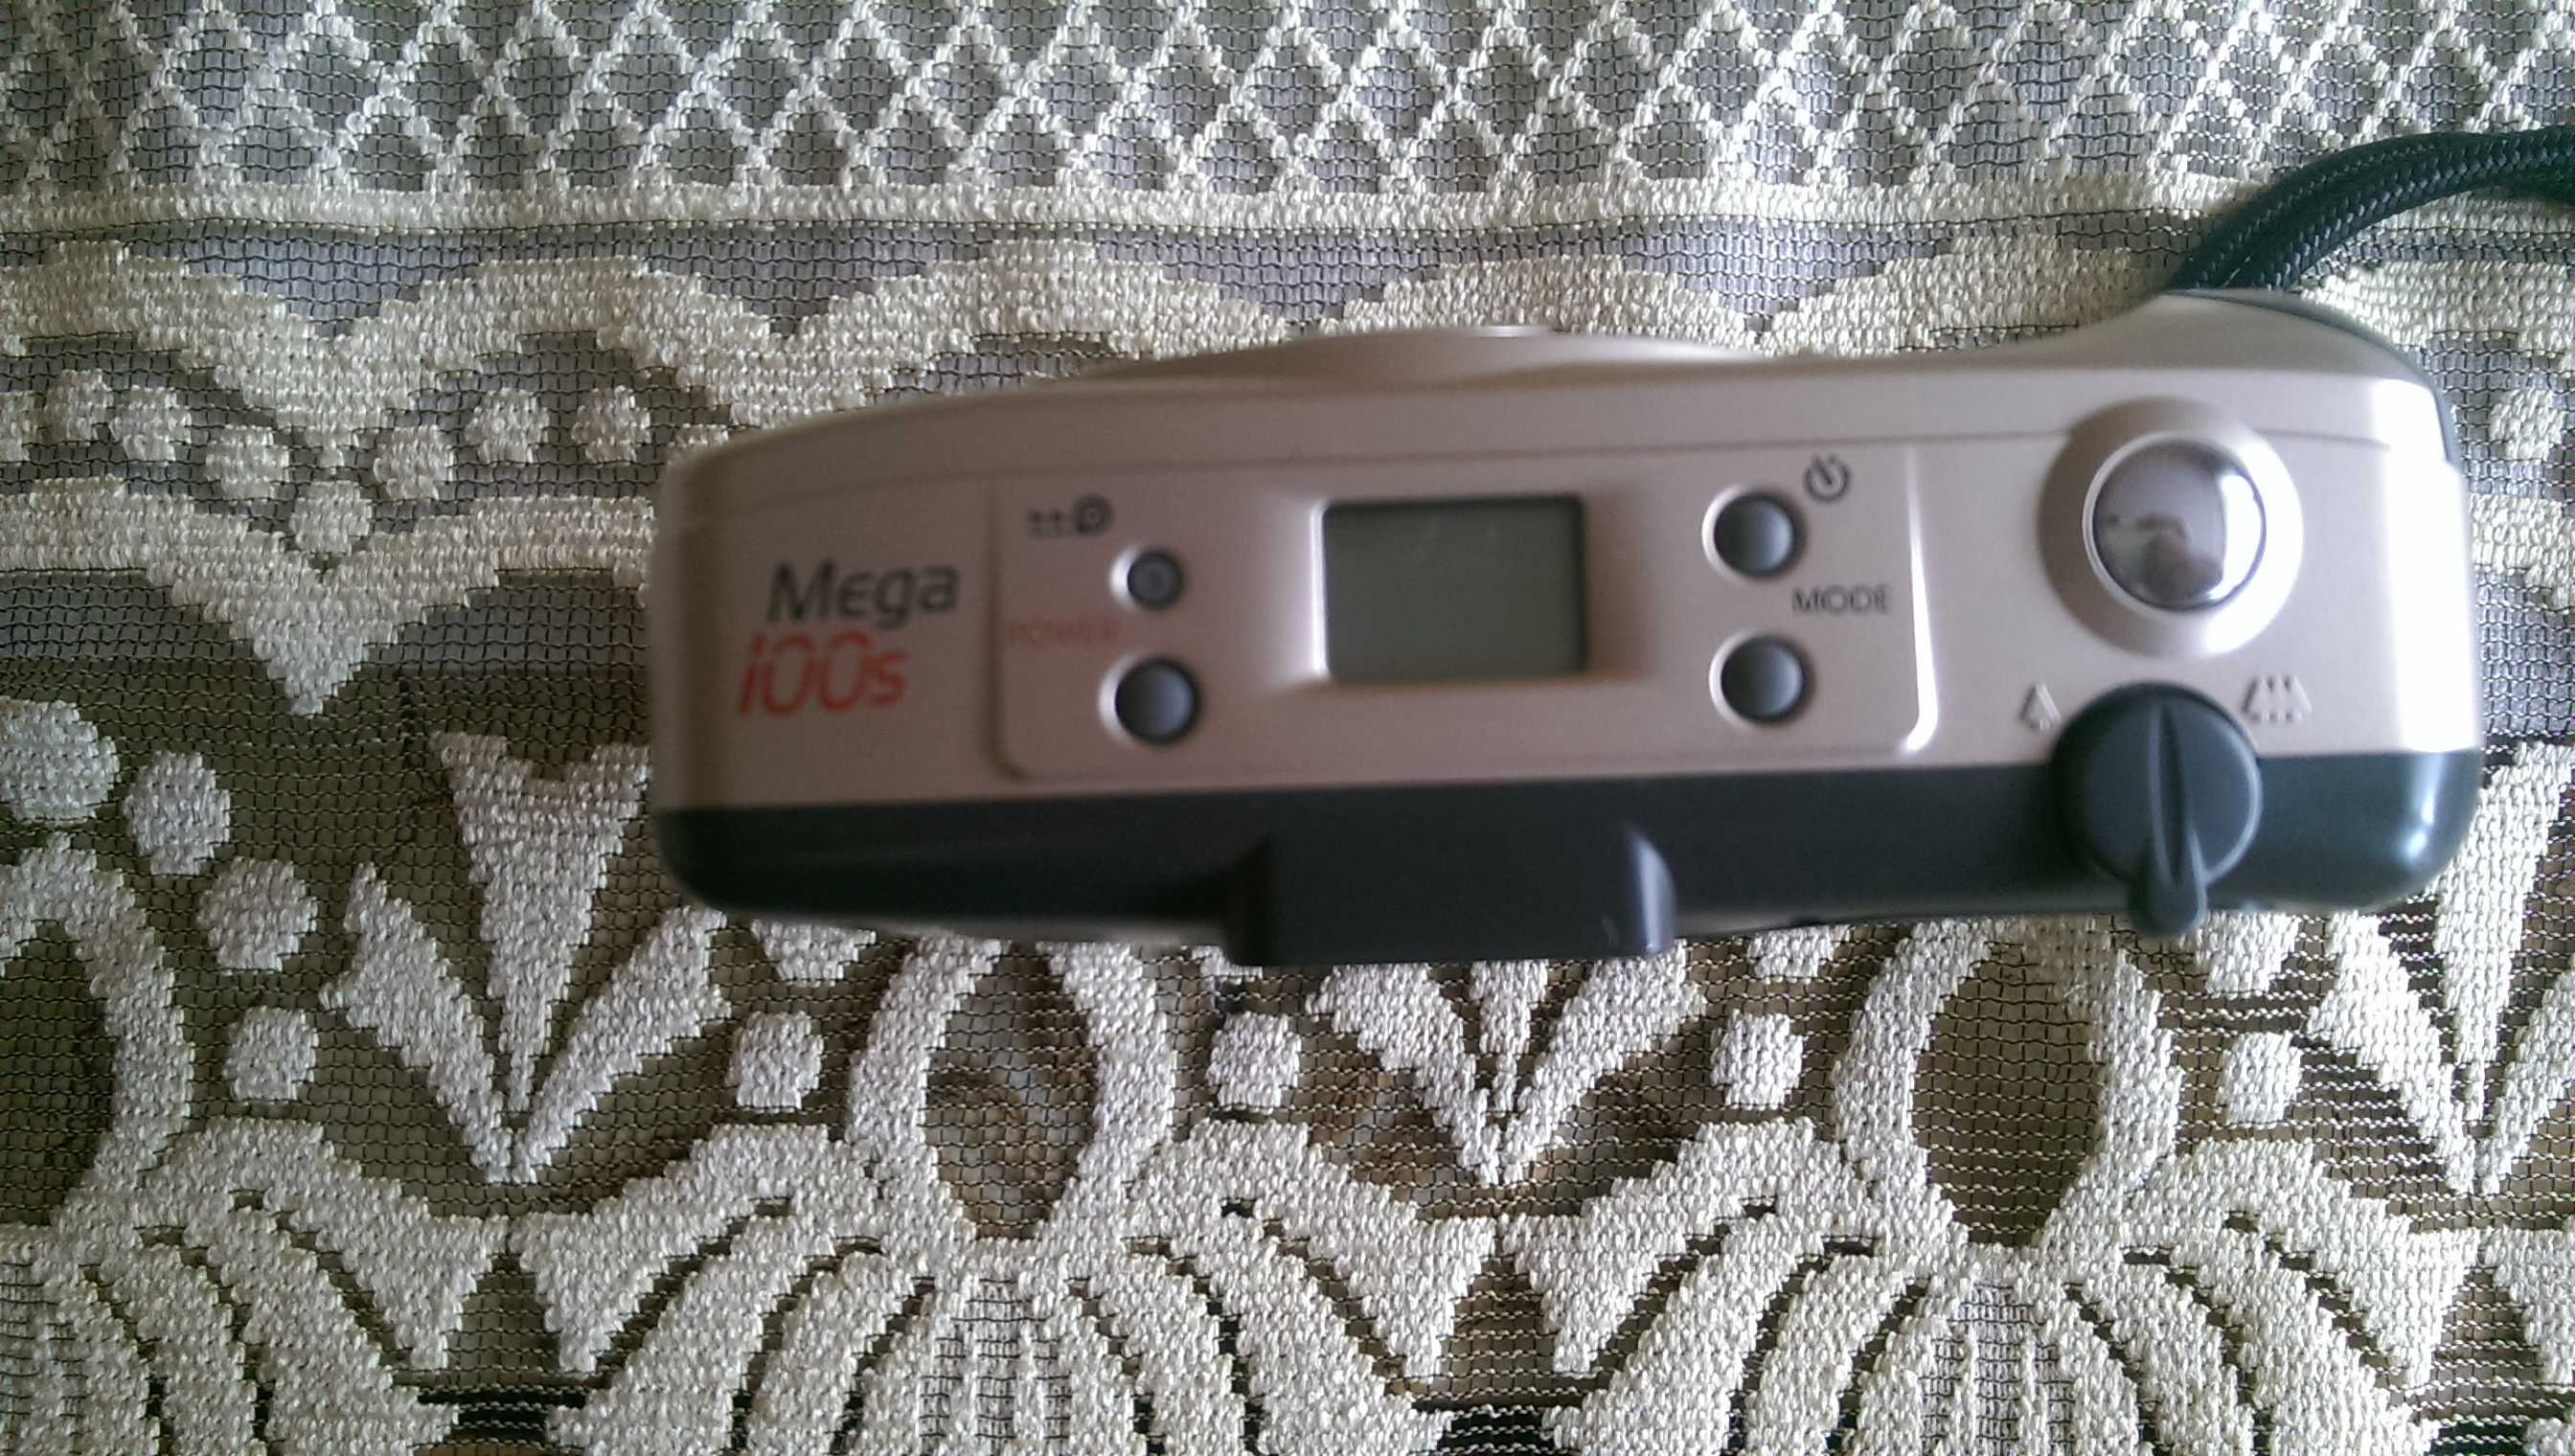 Aparat analogowy Vivitar Mega 100s